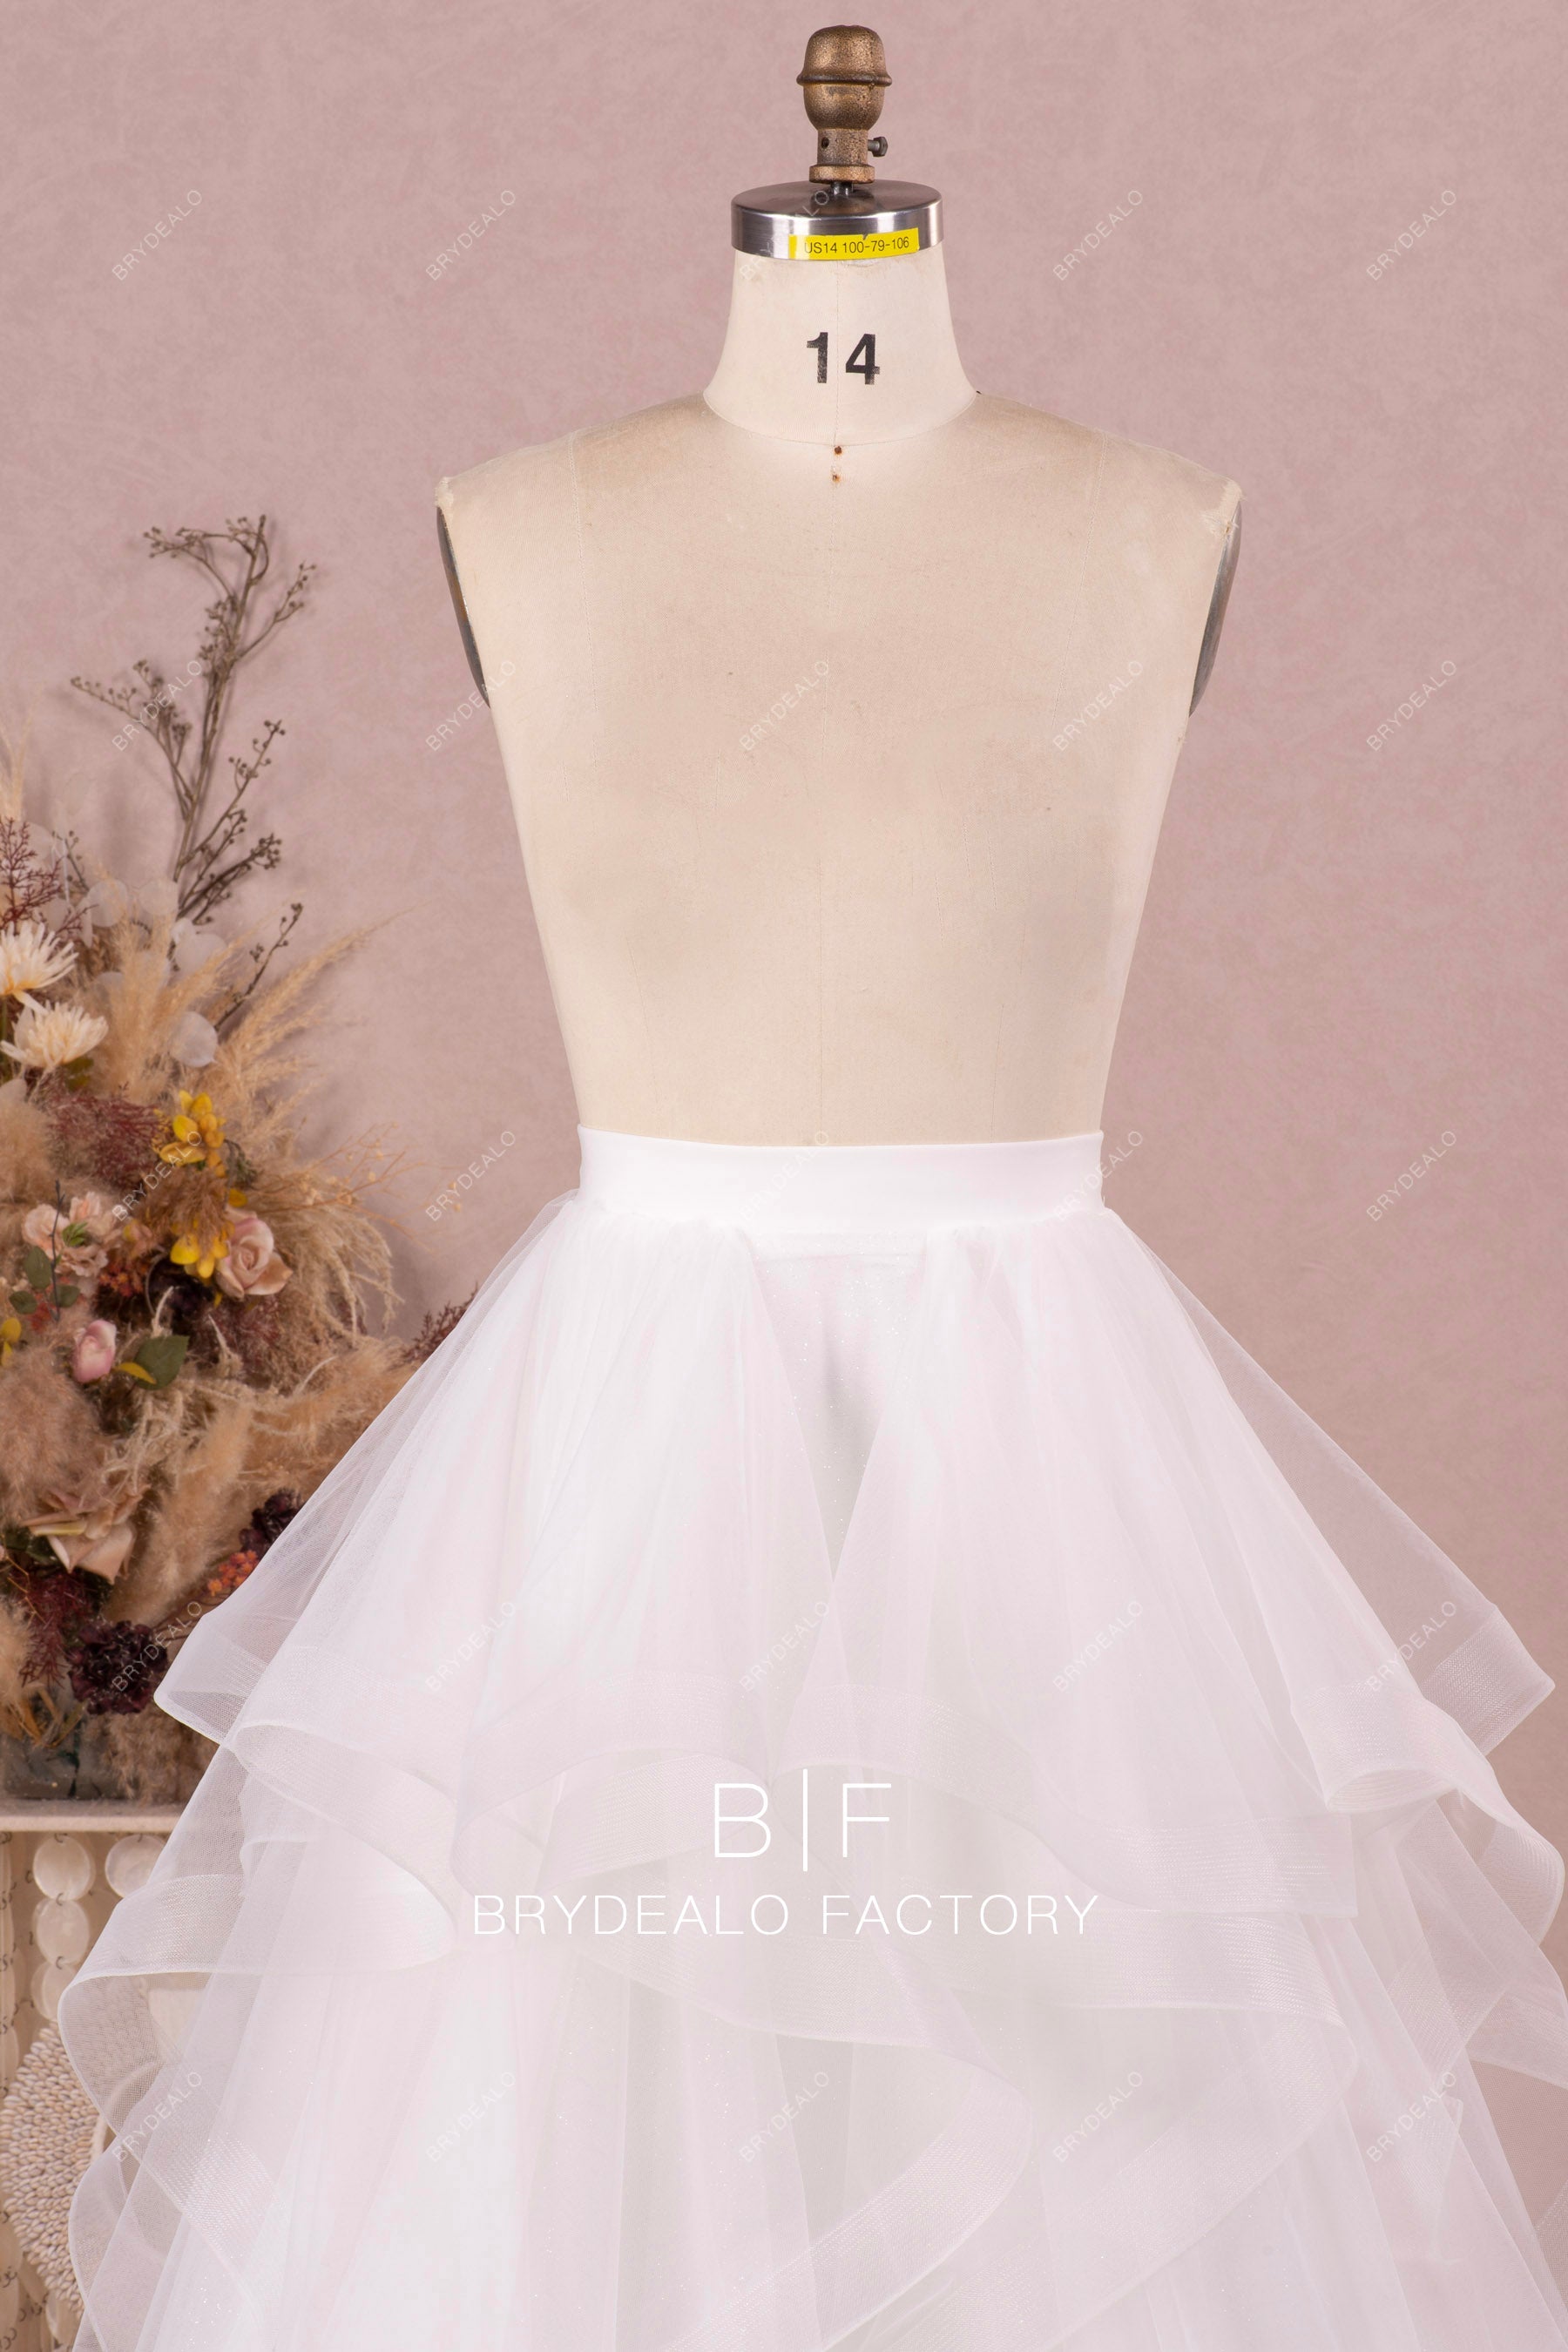 white bridal ruffled skirt